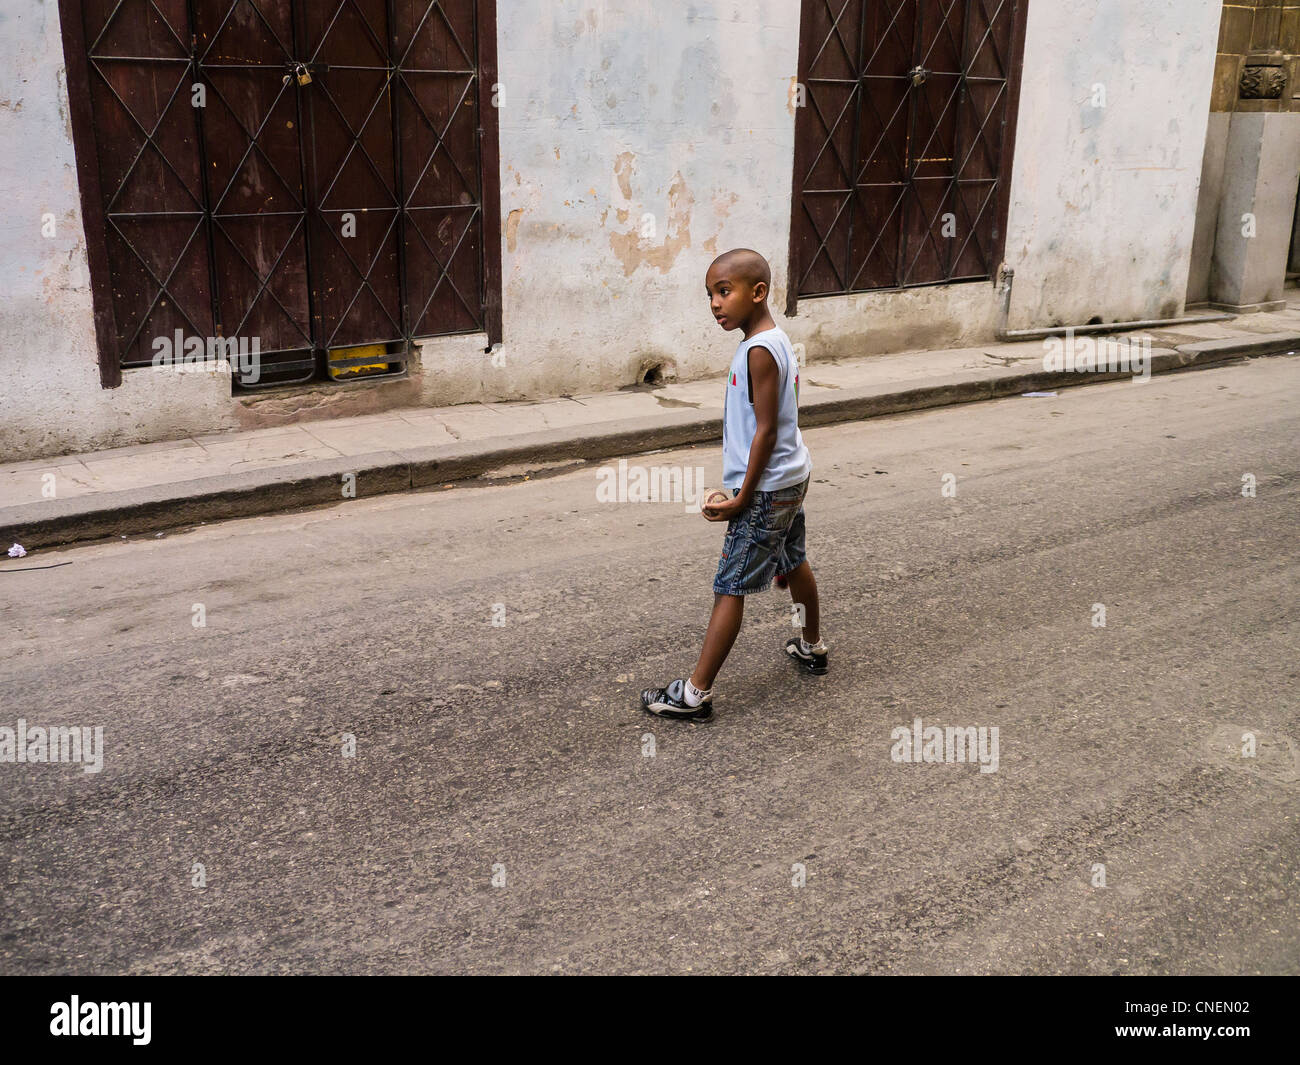 Ein junge kubanische 8-10 spielt Baseball in den Straßen von Havanna Vieja Abschnitt von Havanna, Kuba. Stockfoto